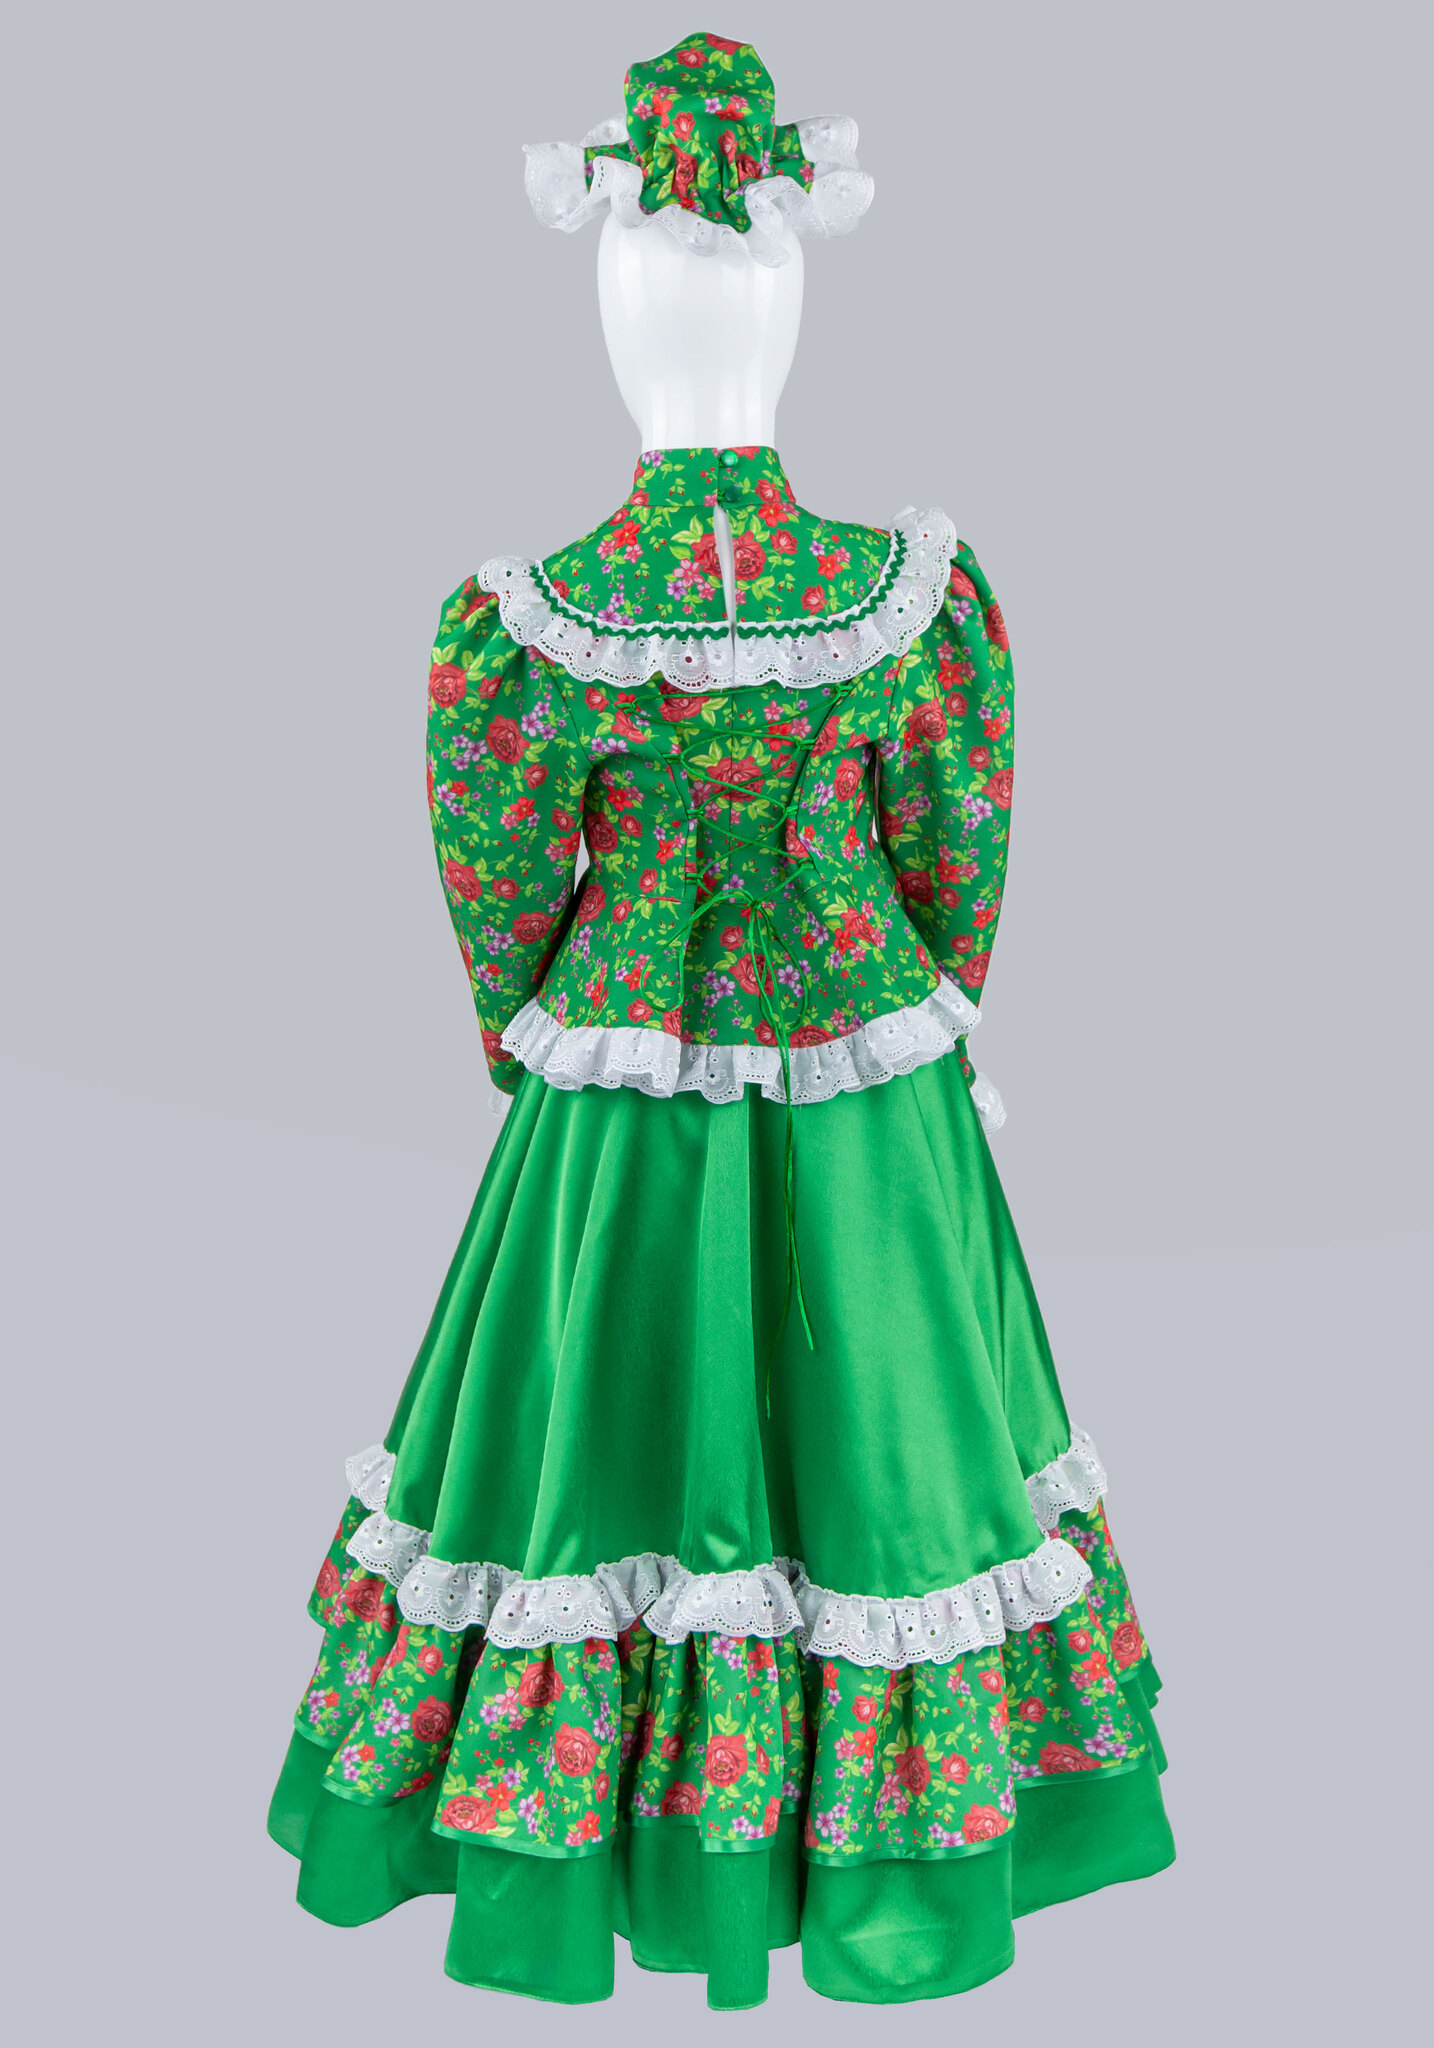 Национальный костюм кубанской девушки - купить Женские казачьи костюмы в магазине KAZAK-SHOP